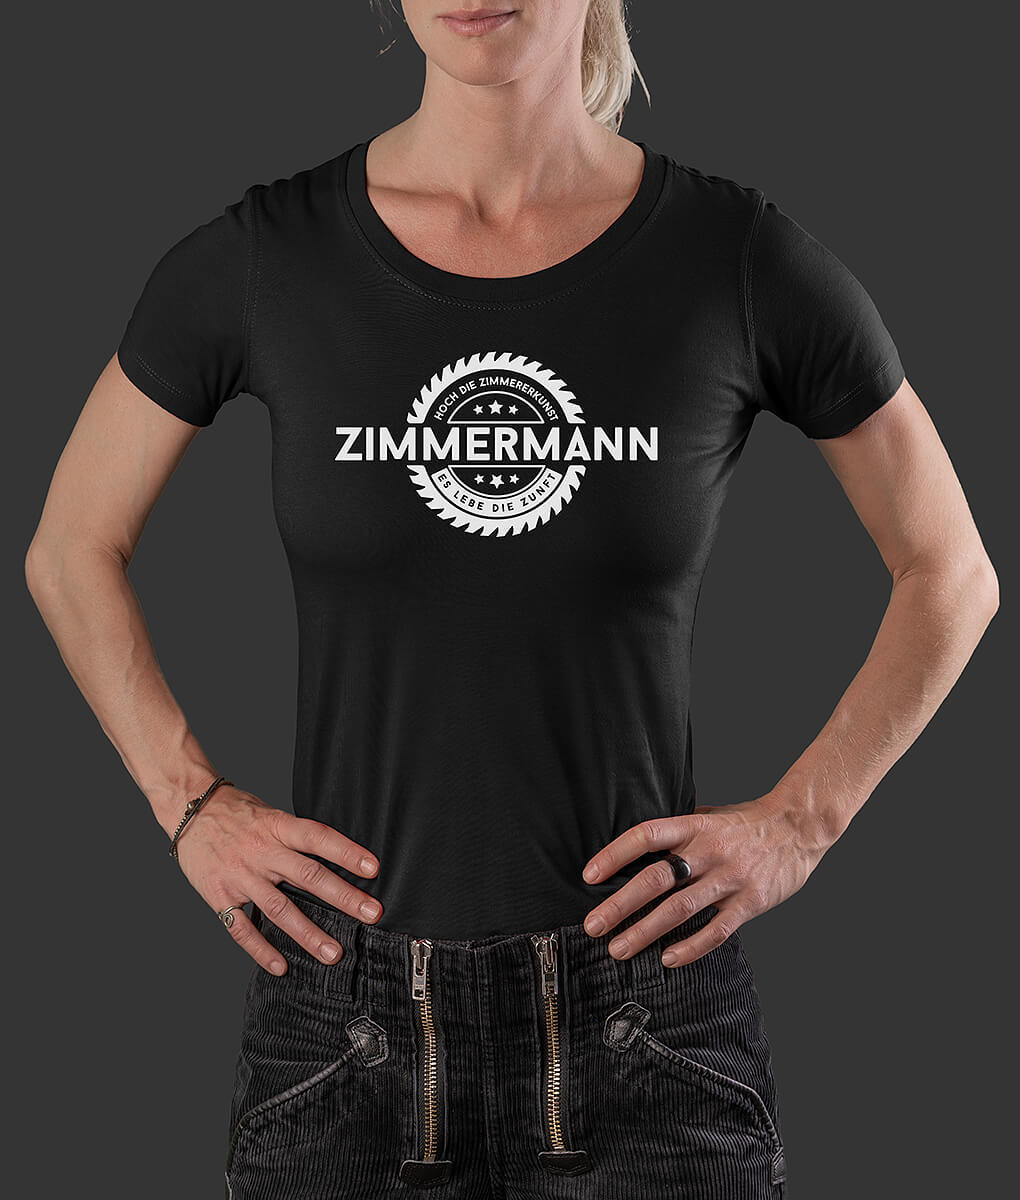 Damen T-Shirt Ida Säge Zimmermann